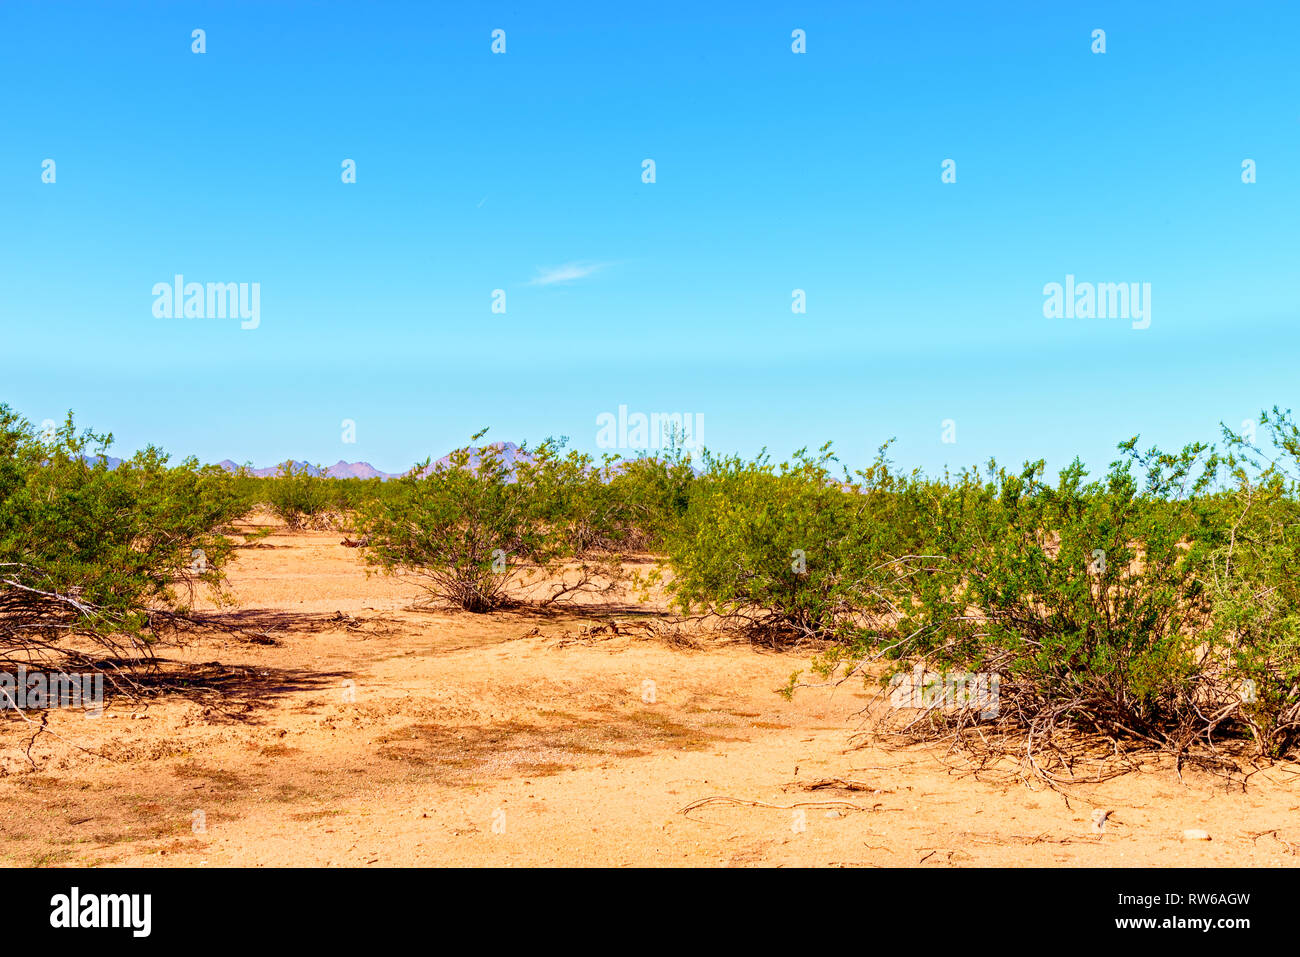 Aprire il deserto con arancione marrone del suolo e verde cespugli di creosoto in azzurro cielo. Foto Stock